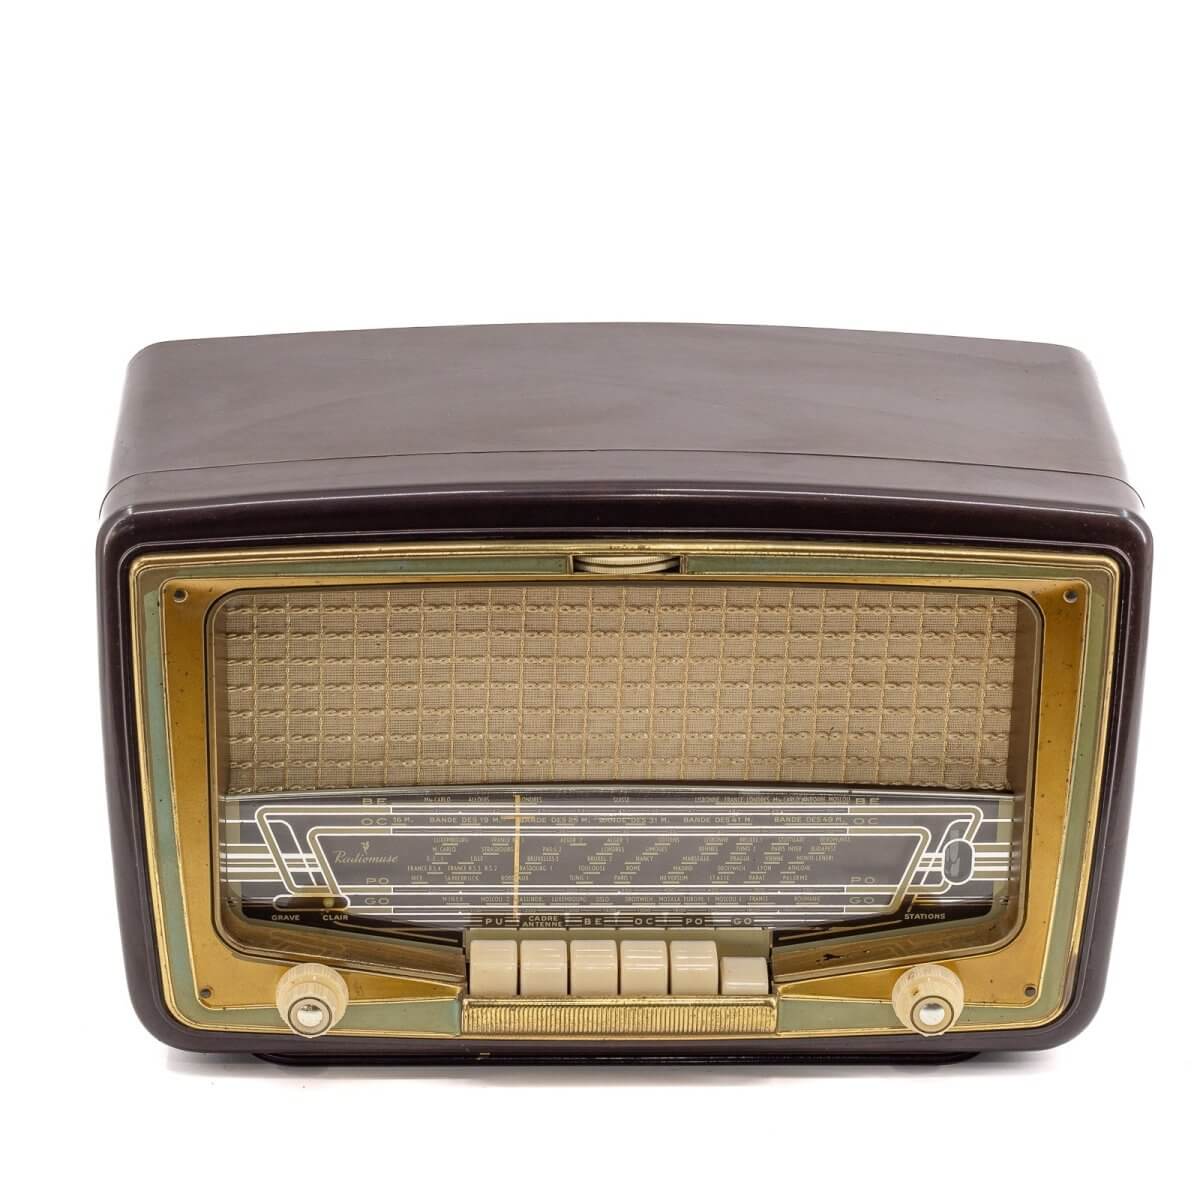 Radio Bluetooth Muse Vintage 50’S enceinte connectée française haut de gamme absolument prodige radio vintage